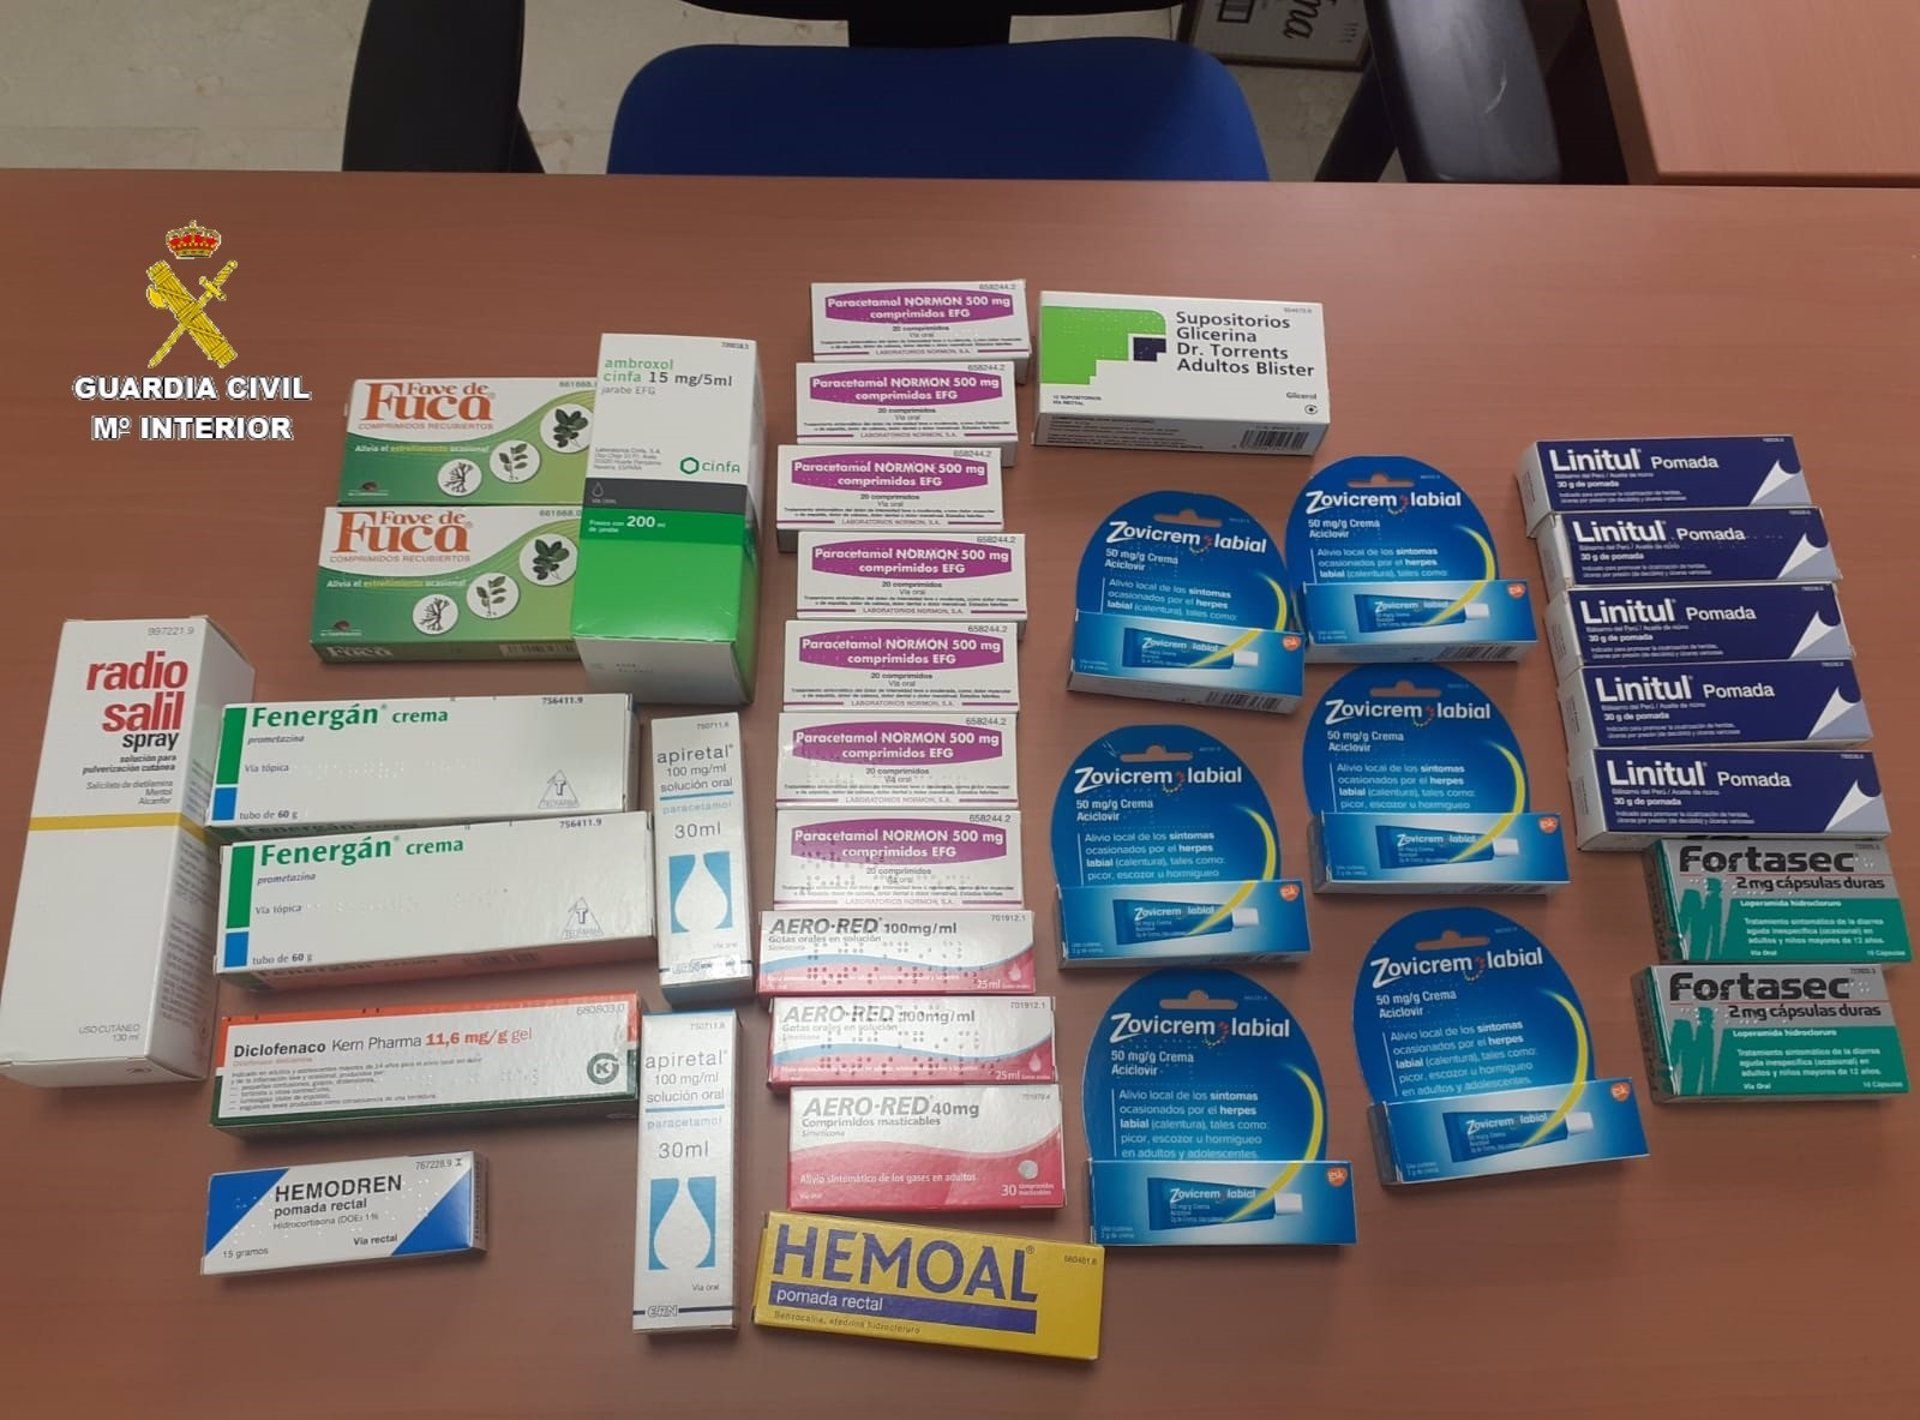 Vendían Hemoal, Fortasec y otros medicamentos sin autorización en un local de Atlanterra, en Tarifa